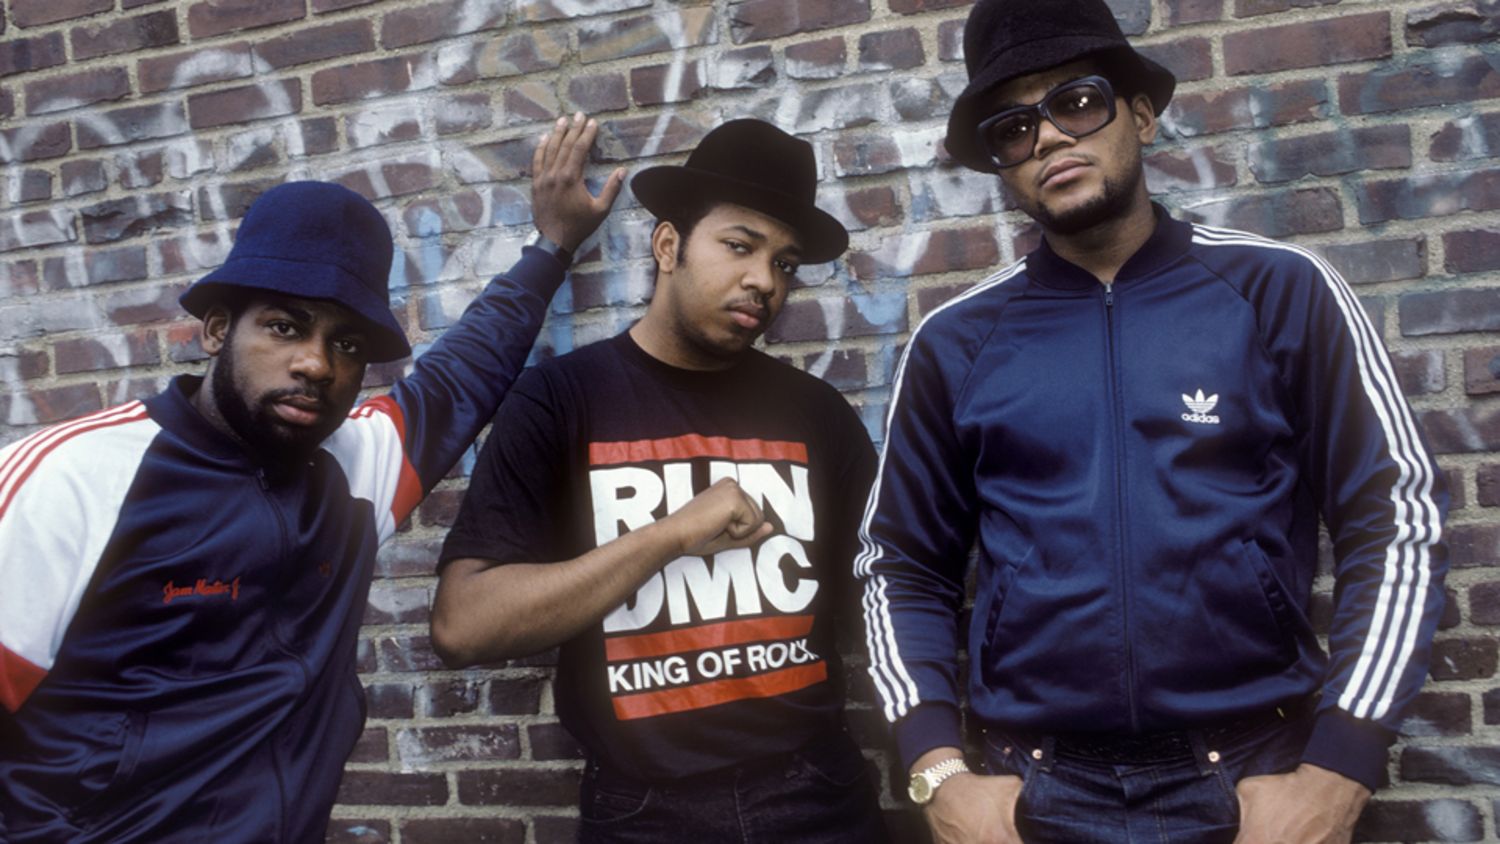 Hiphopgroep Run D.M.C. in 1986